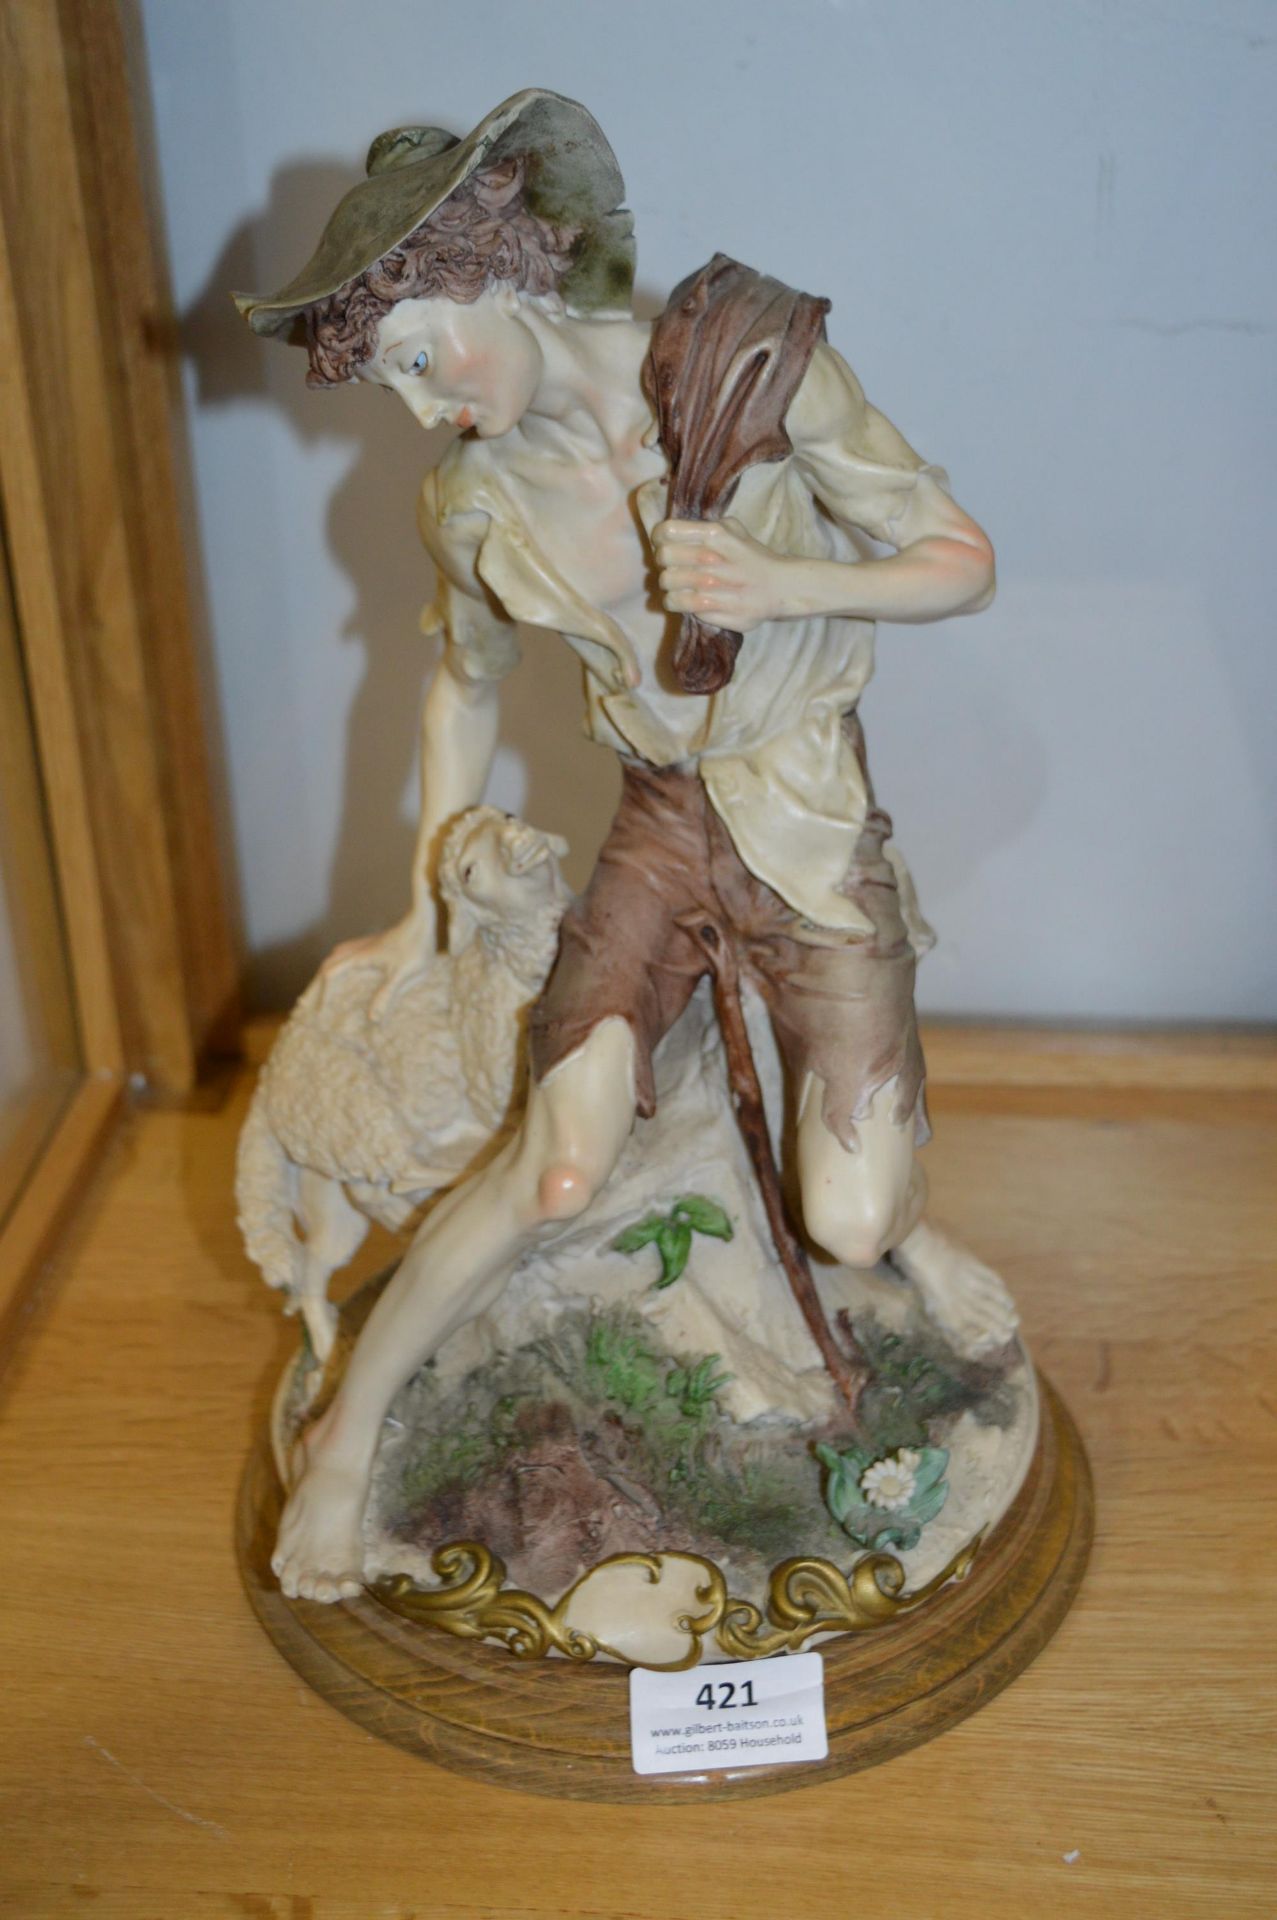 Capodimonte Figurine - Shepherd